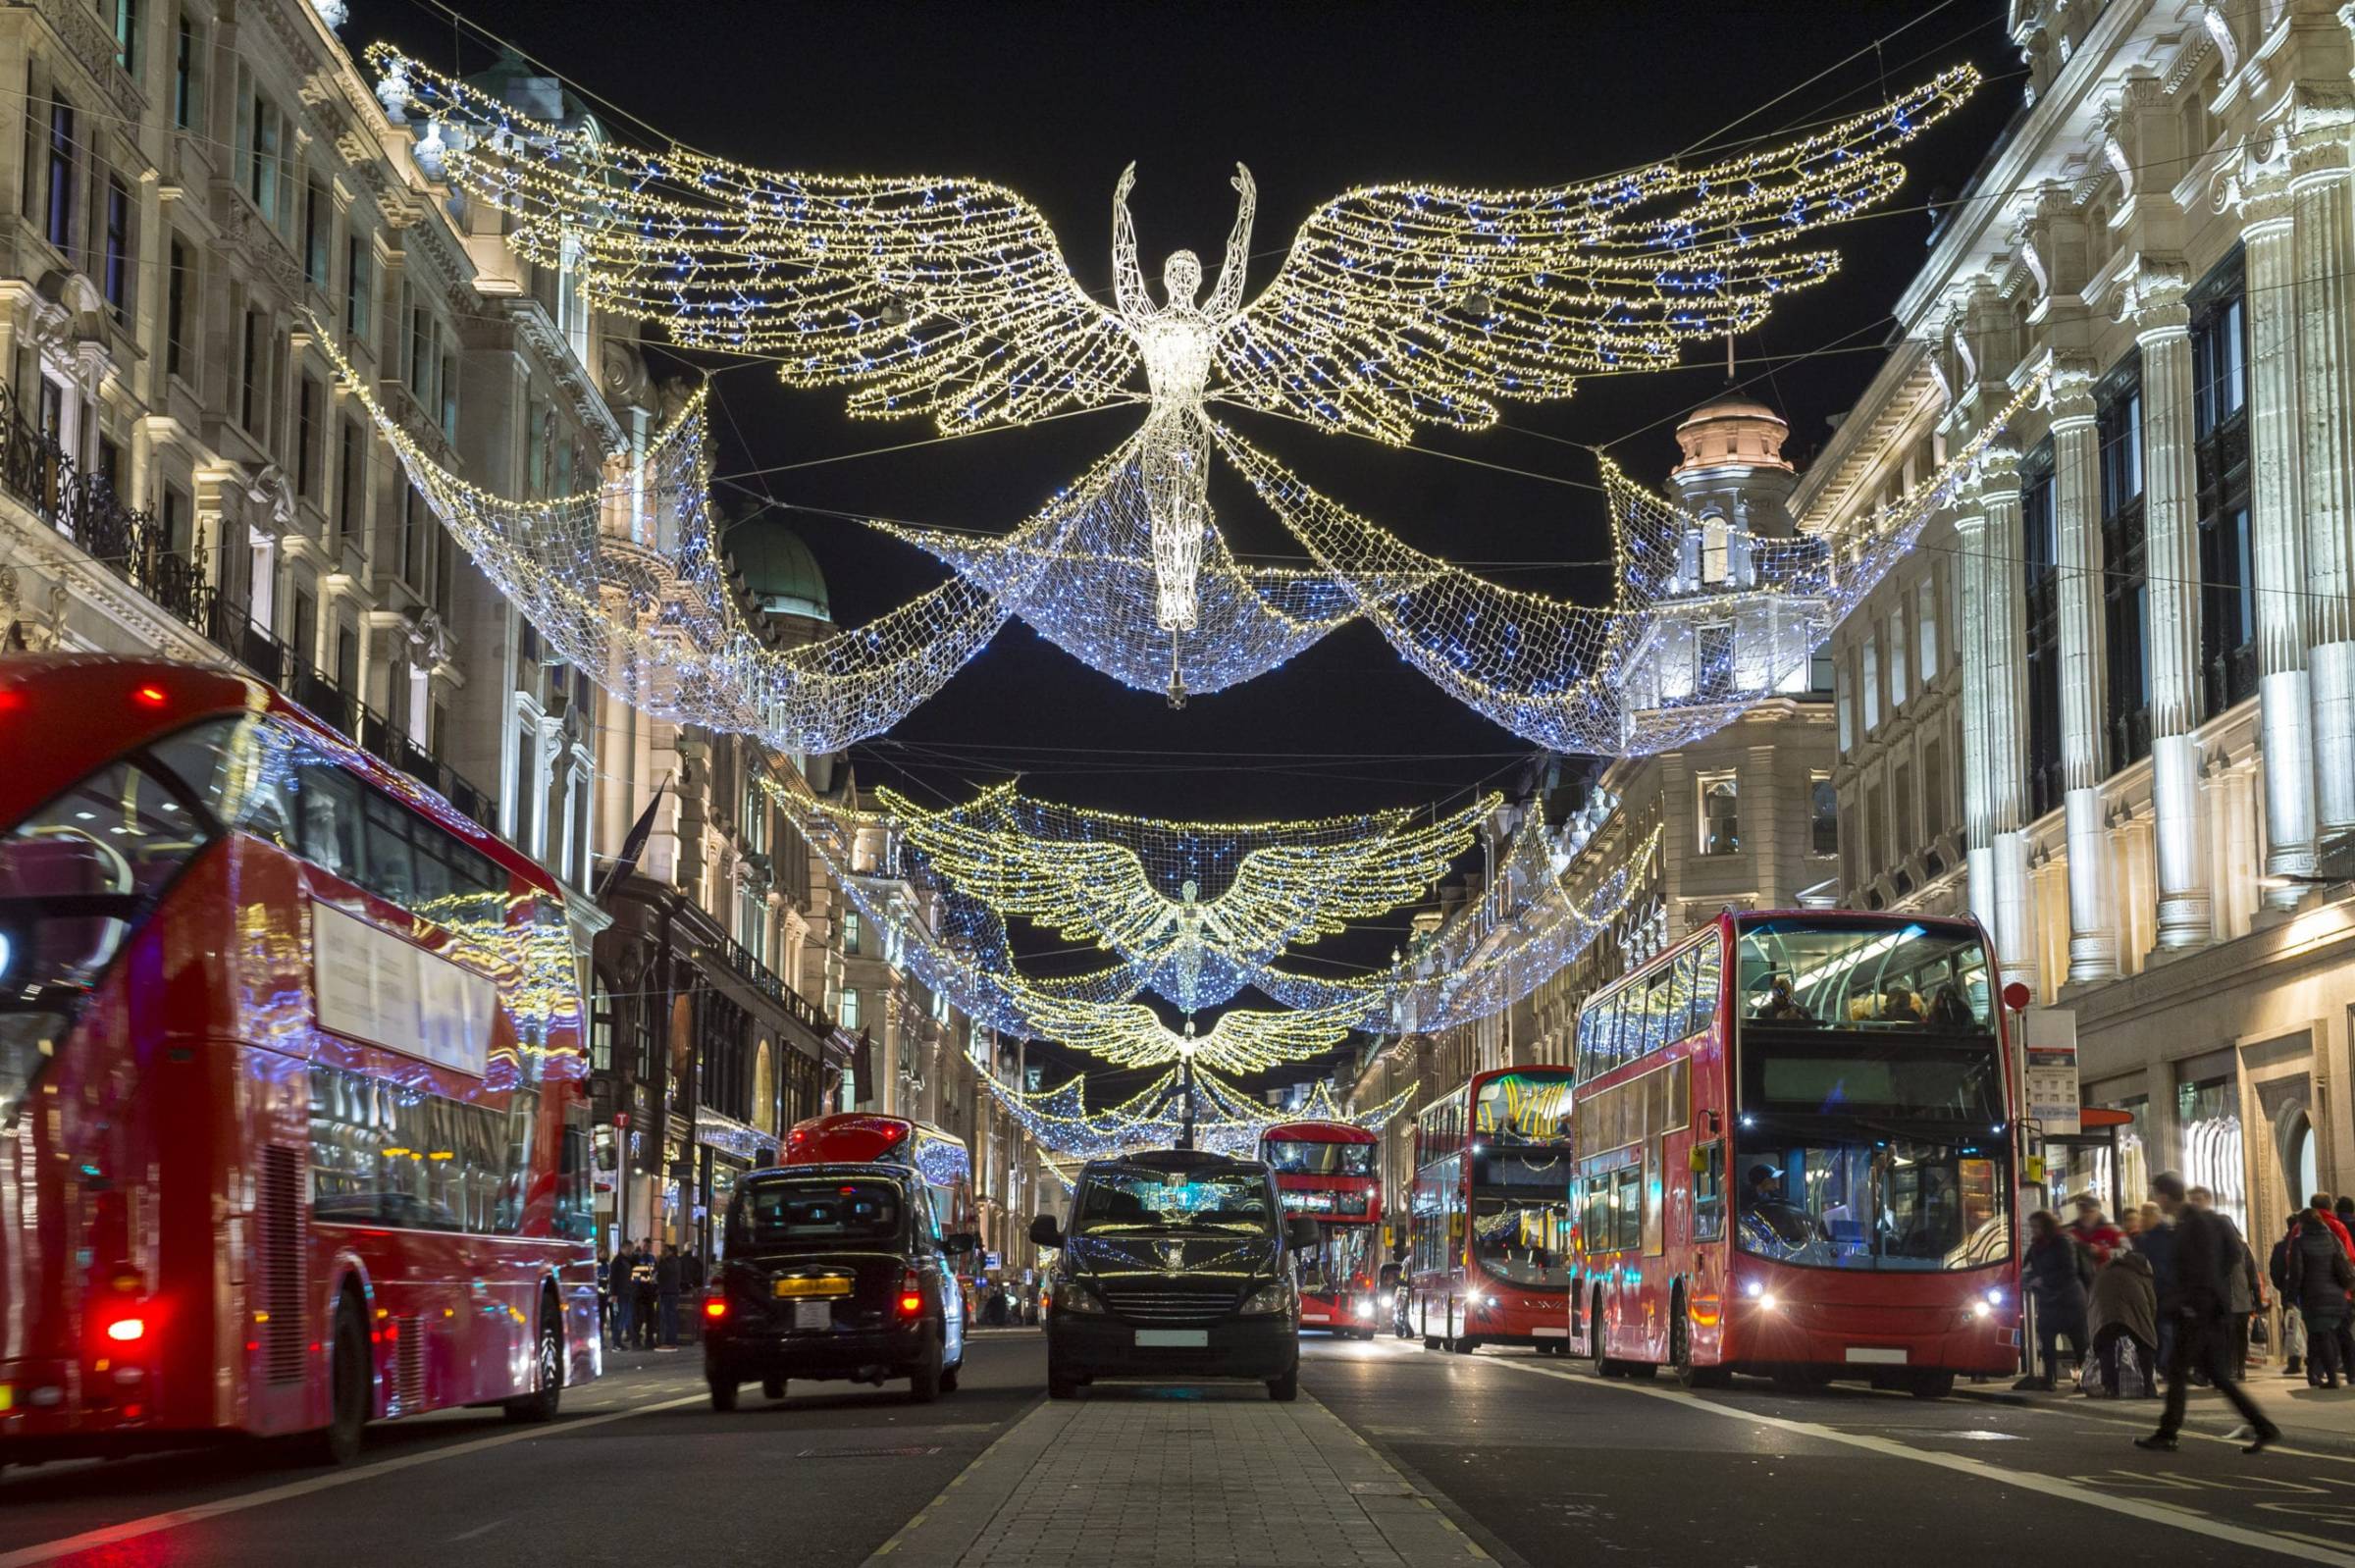 London at Christmas